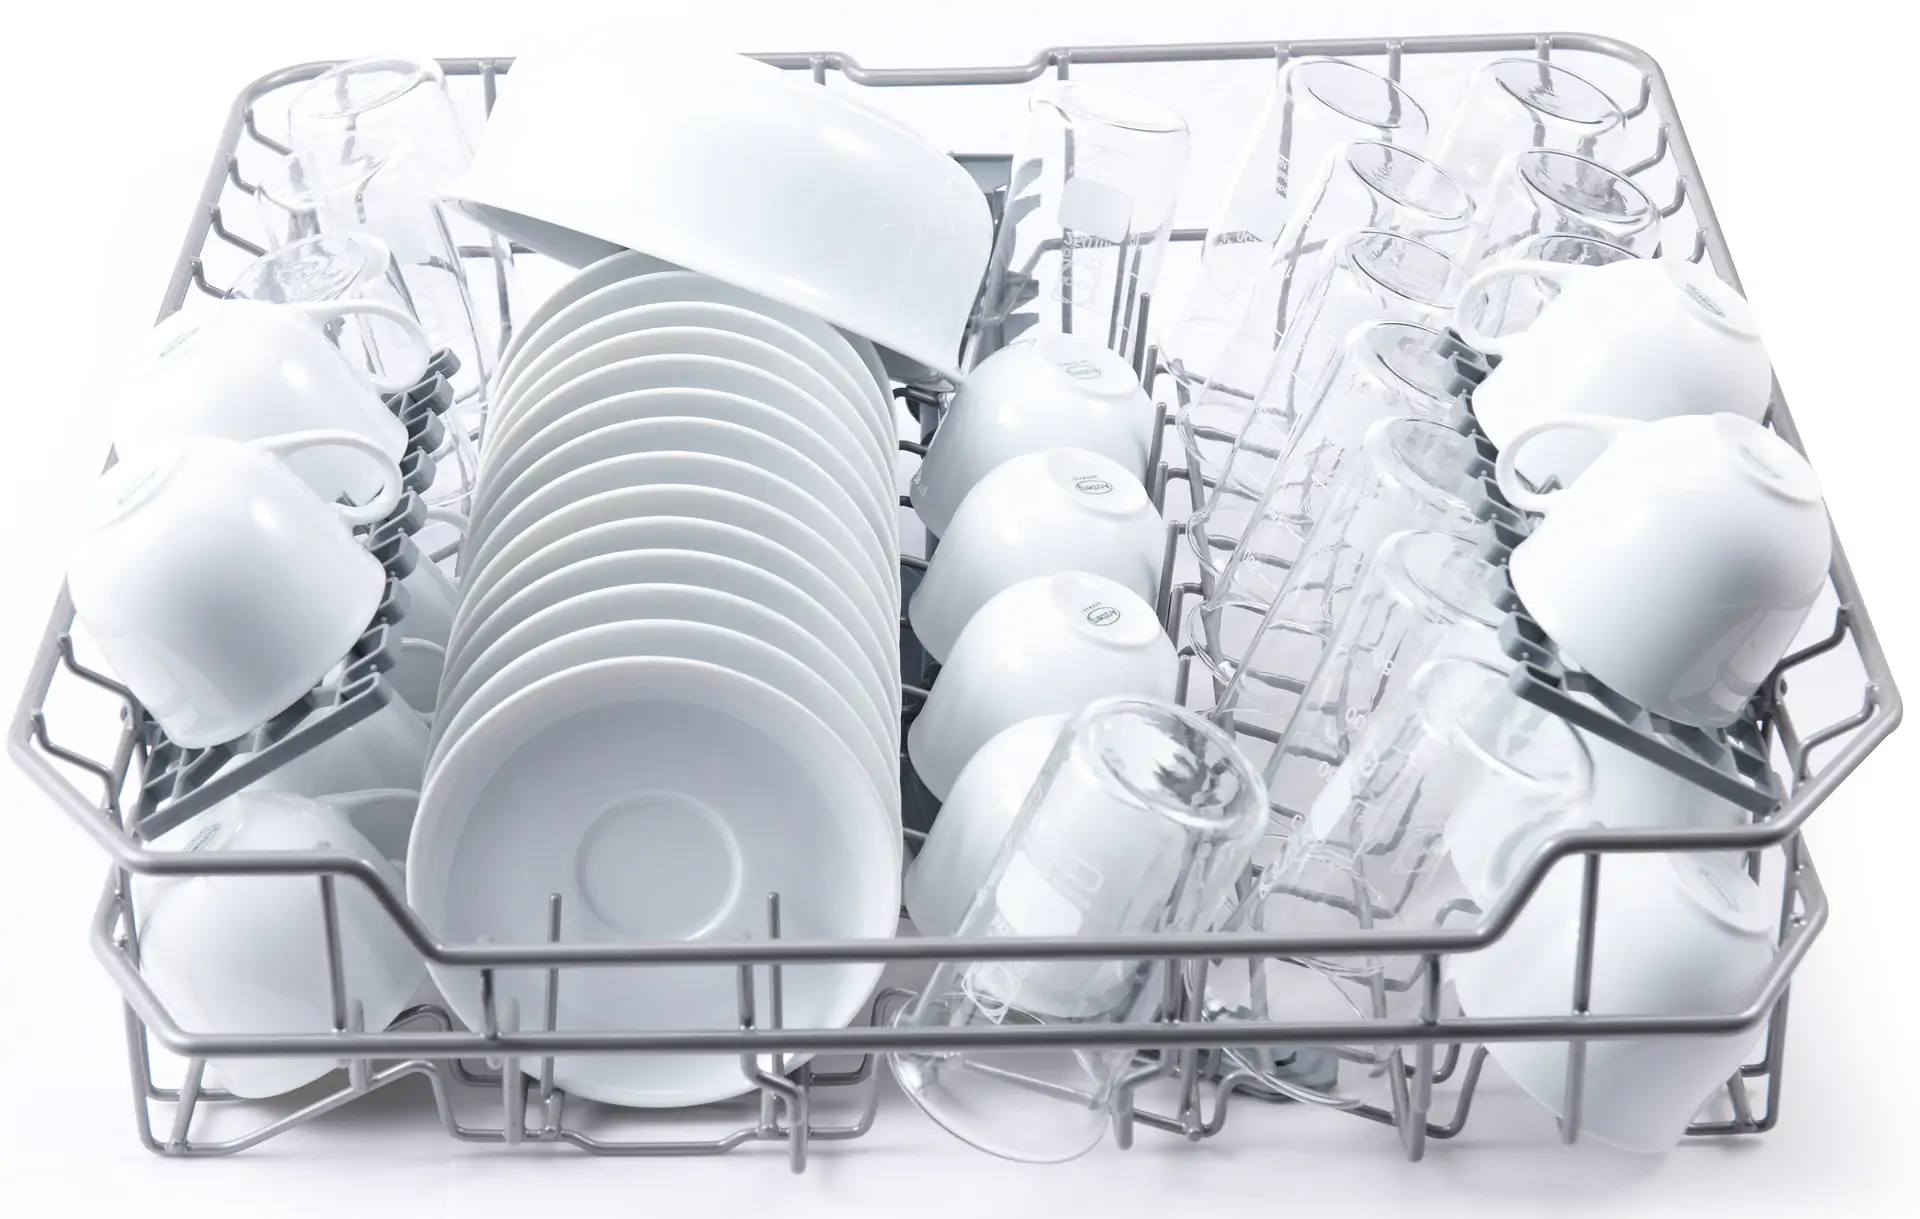 Посудомоечная машина Liberty DIM463 отзывы - изображения 5